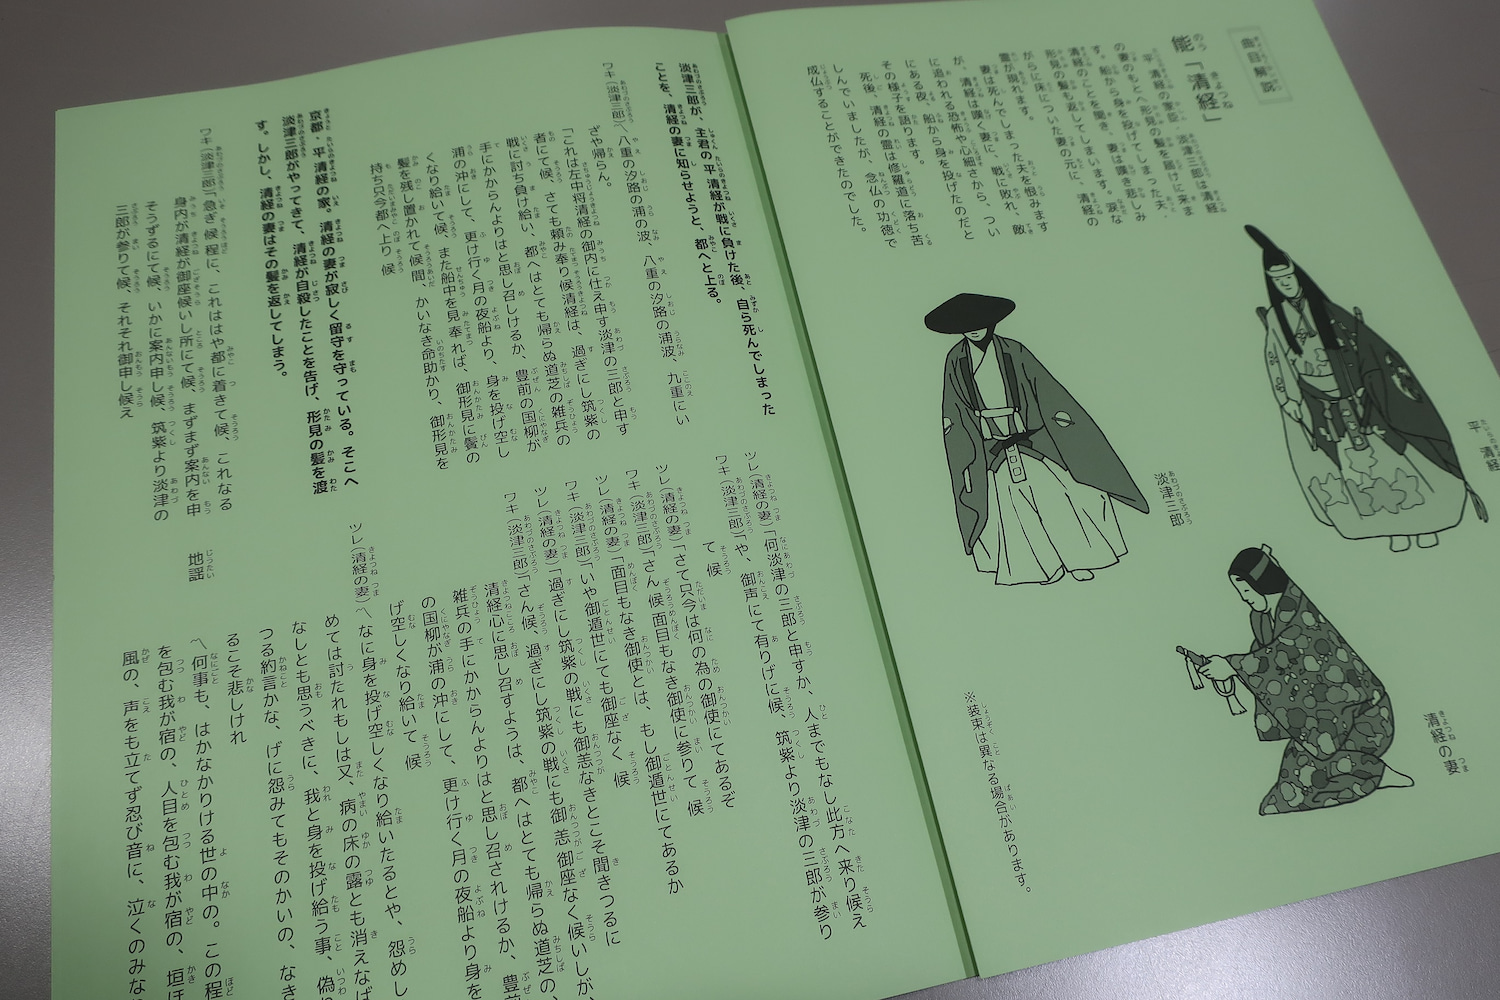 公演のパンフレットです。上演演目の台本と登場人物のイラストが掲載されています。記載されている漢字には、全てふりがながふられています。